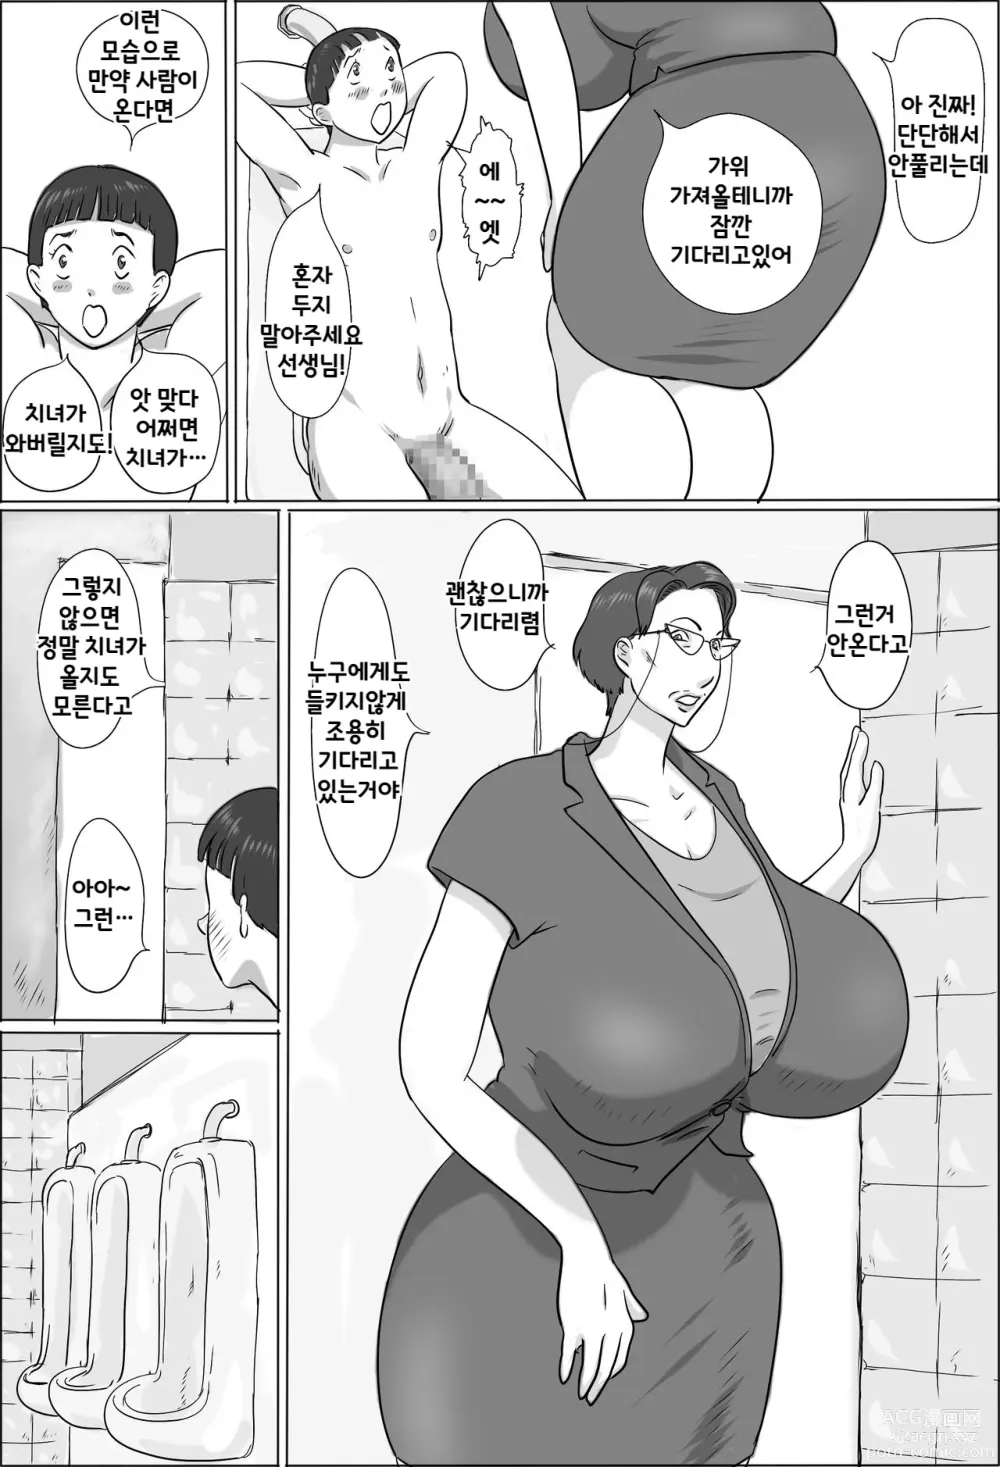 Page 6 of doujinshi 교감은 학교에서 교미한다